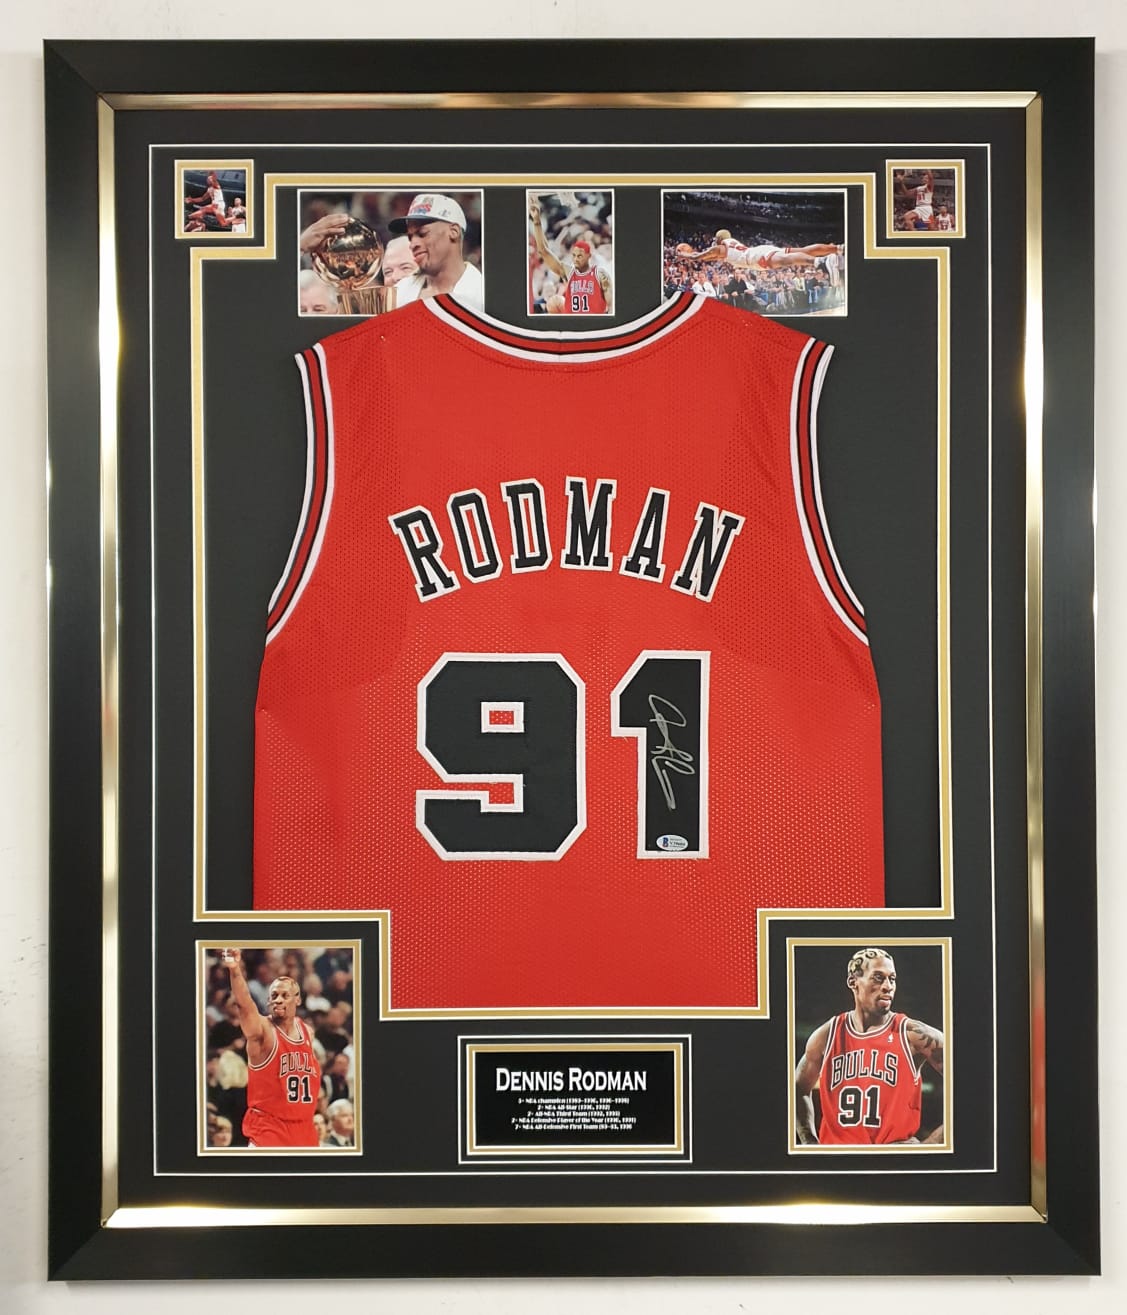 Framed Autographed/Signed Dennis Rodman 33x42 Chicago Red